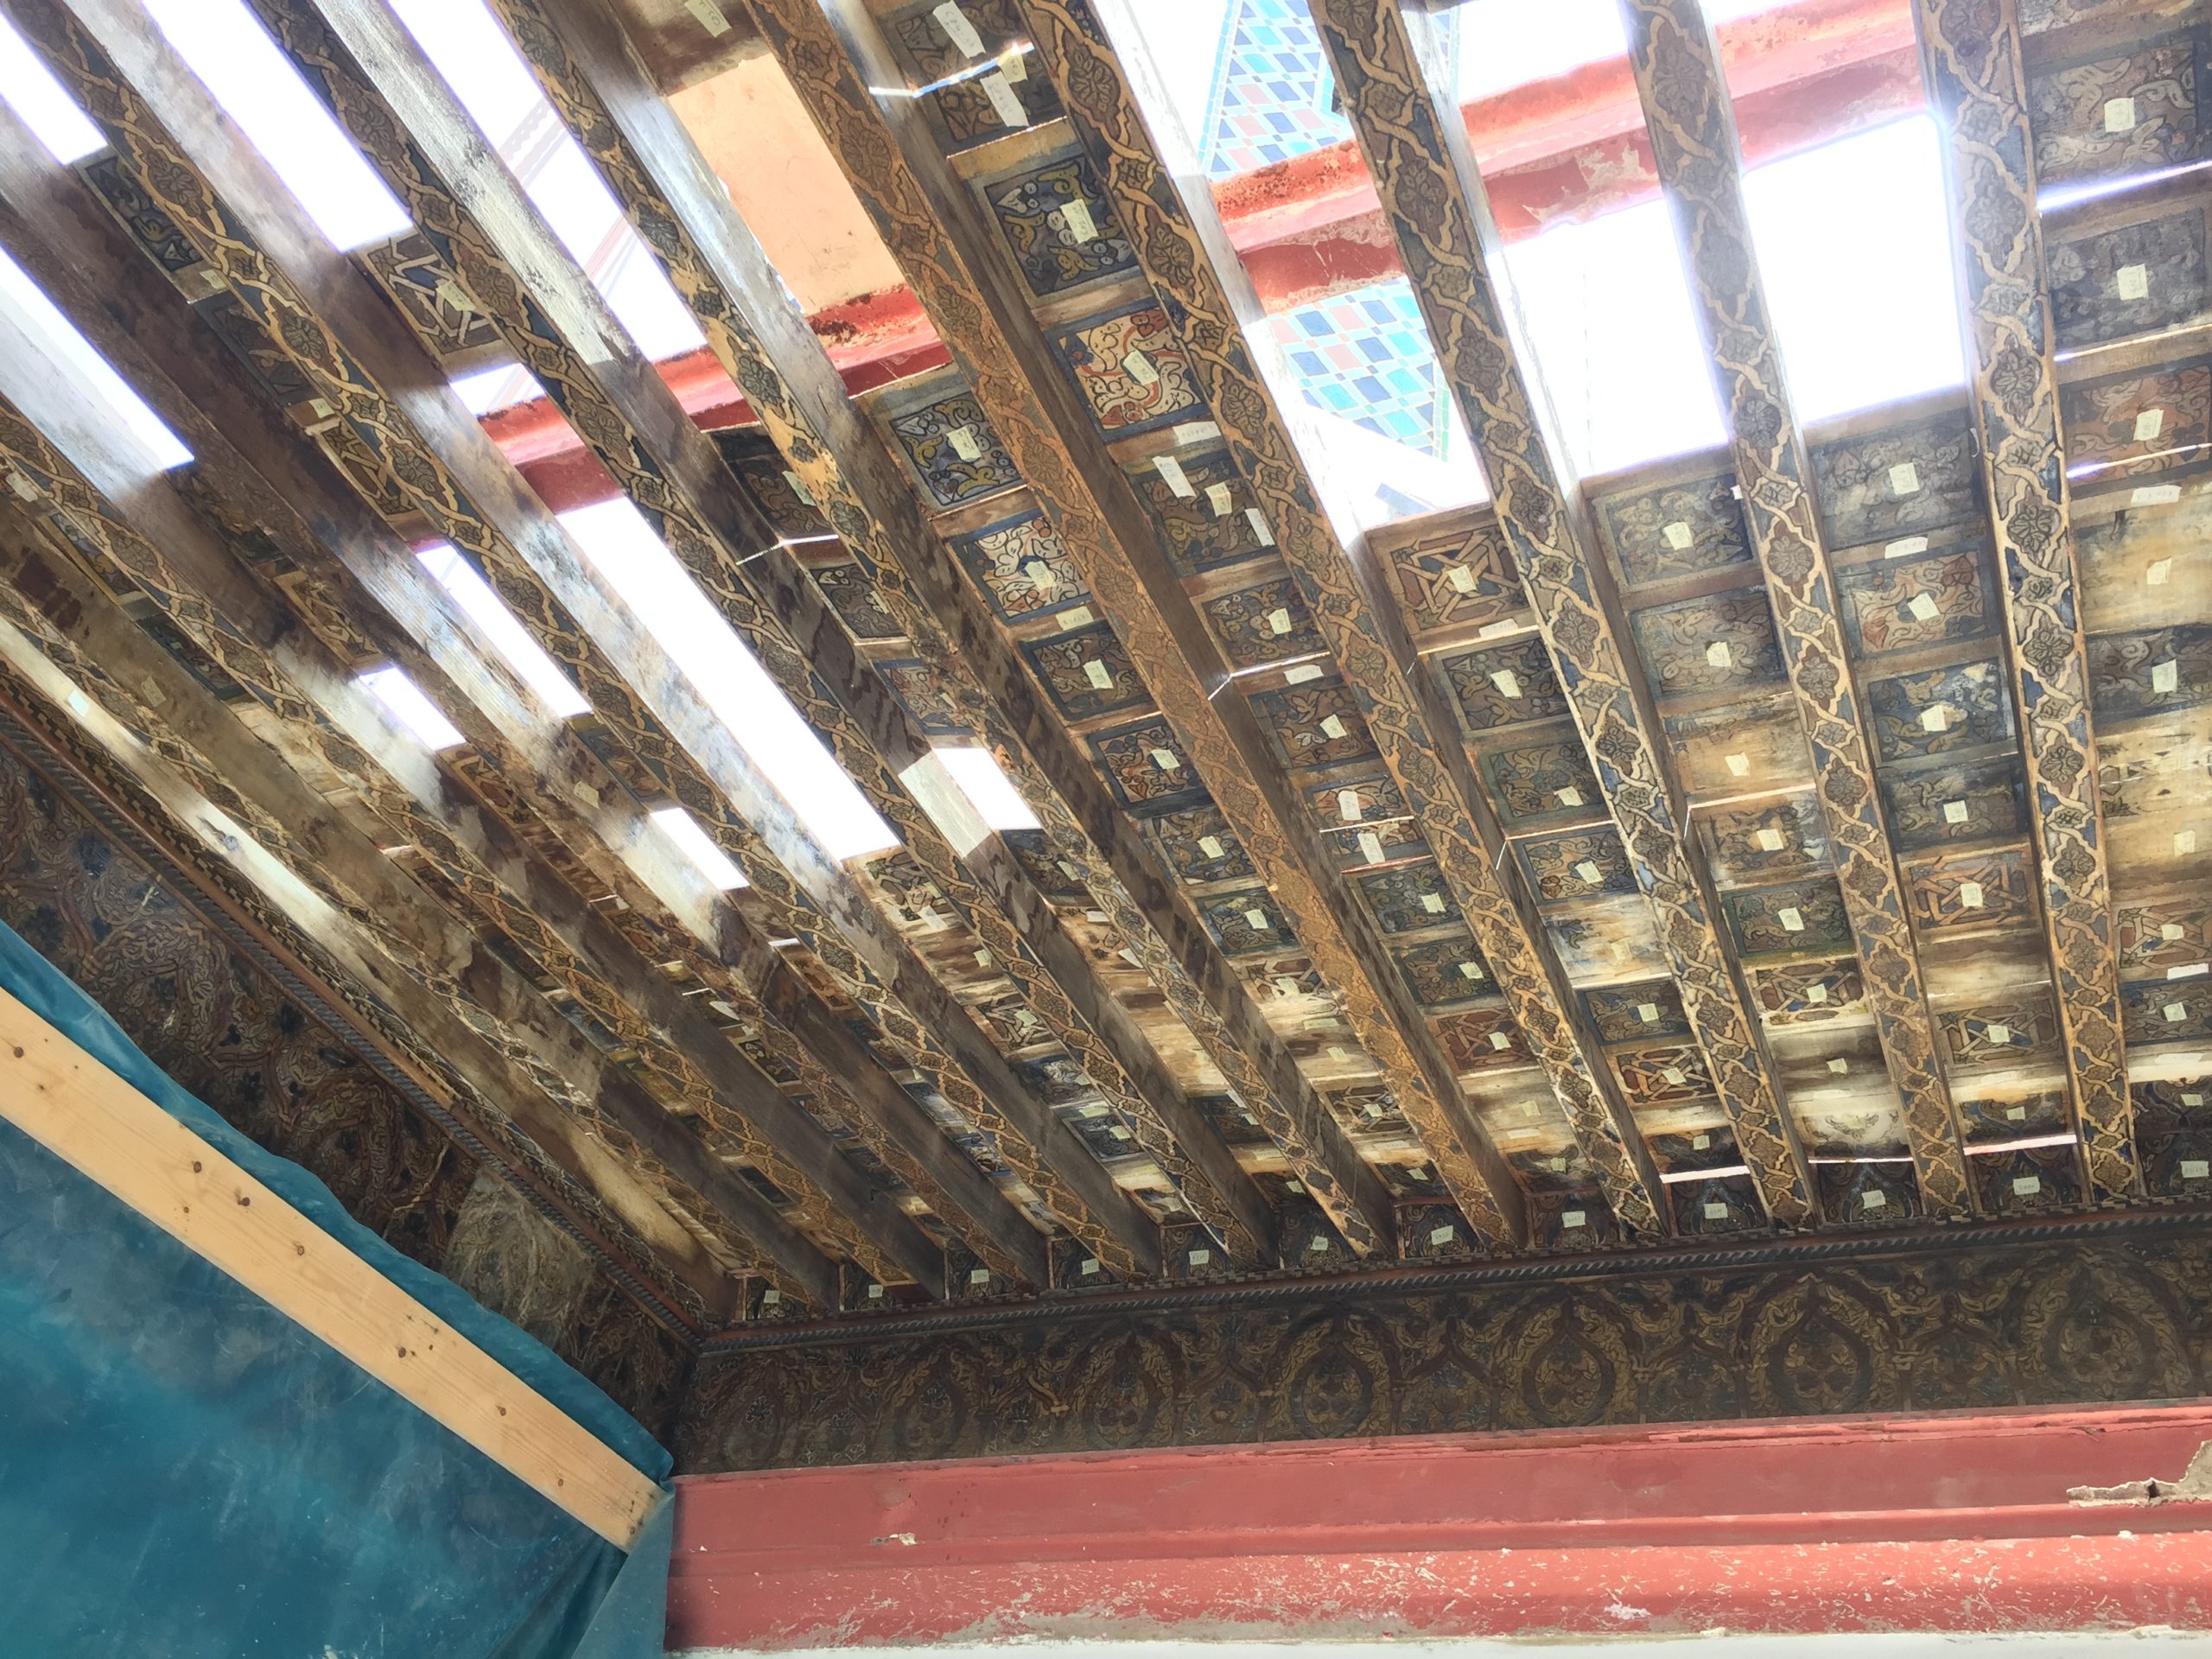 Actuaciones de conservación y restauración de la techumbre de la entrada de la Zaiua Raisunia, Tetuán, Marruecos